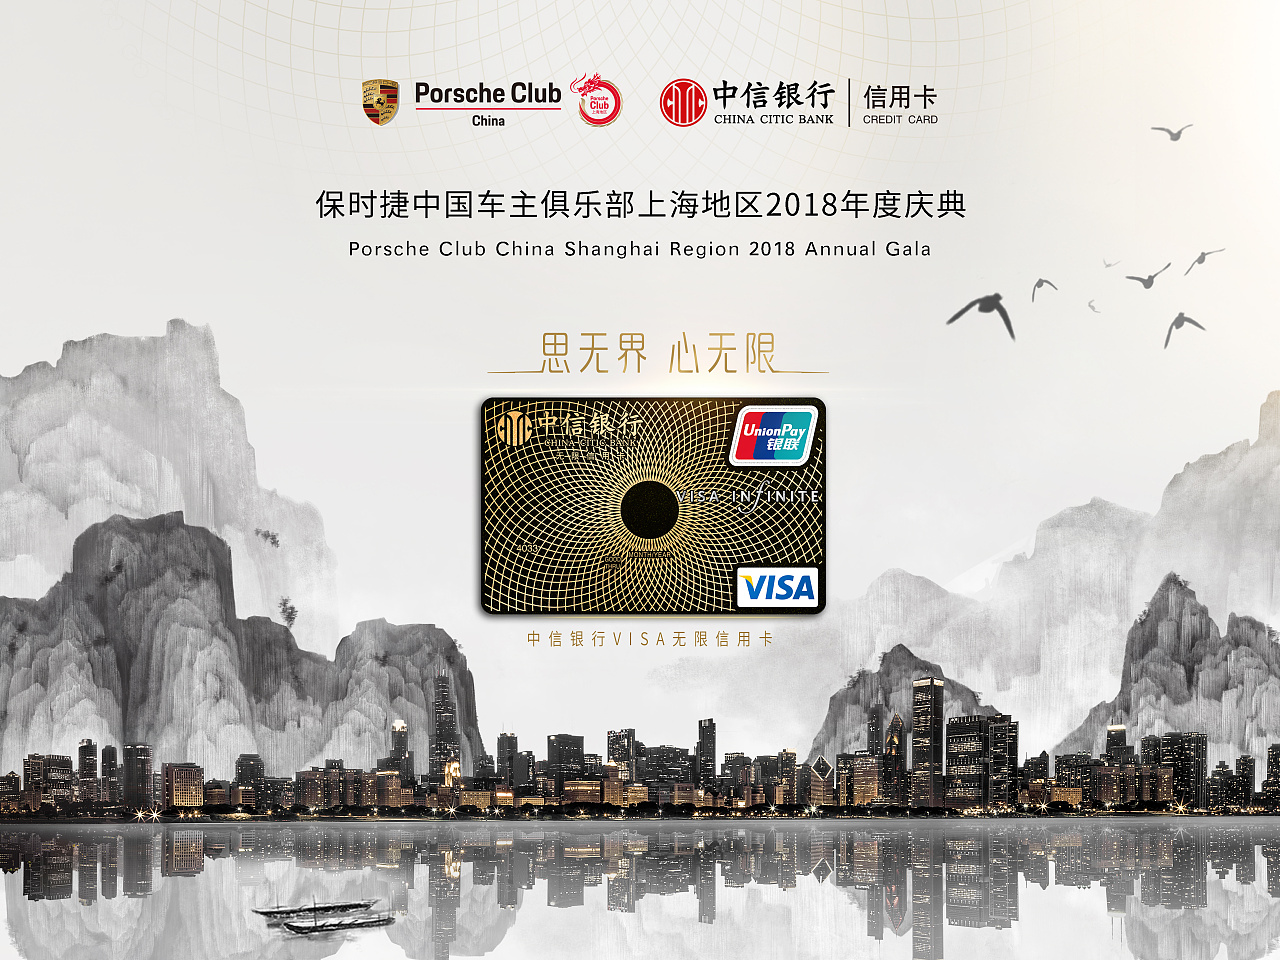 中信银行信用卡中心落地宣传保时捷活动物料